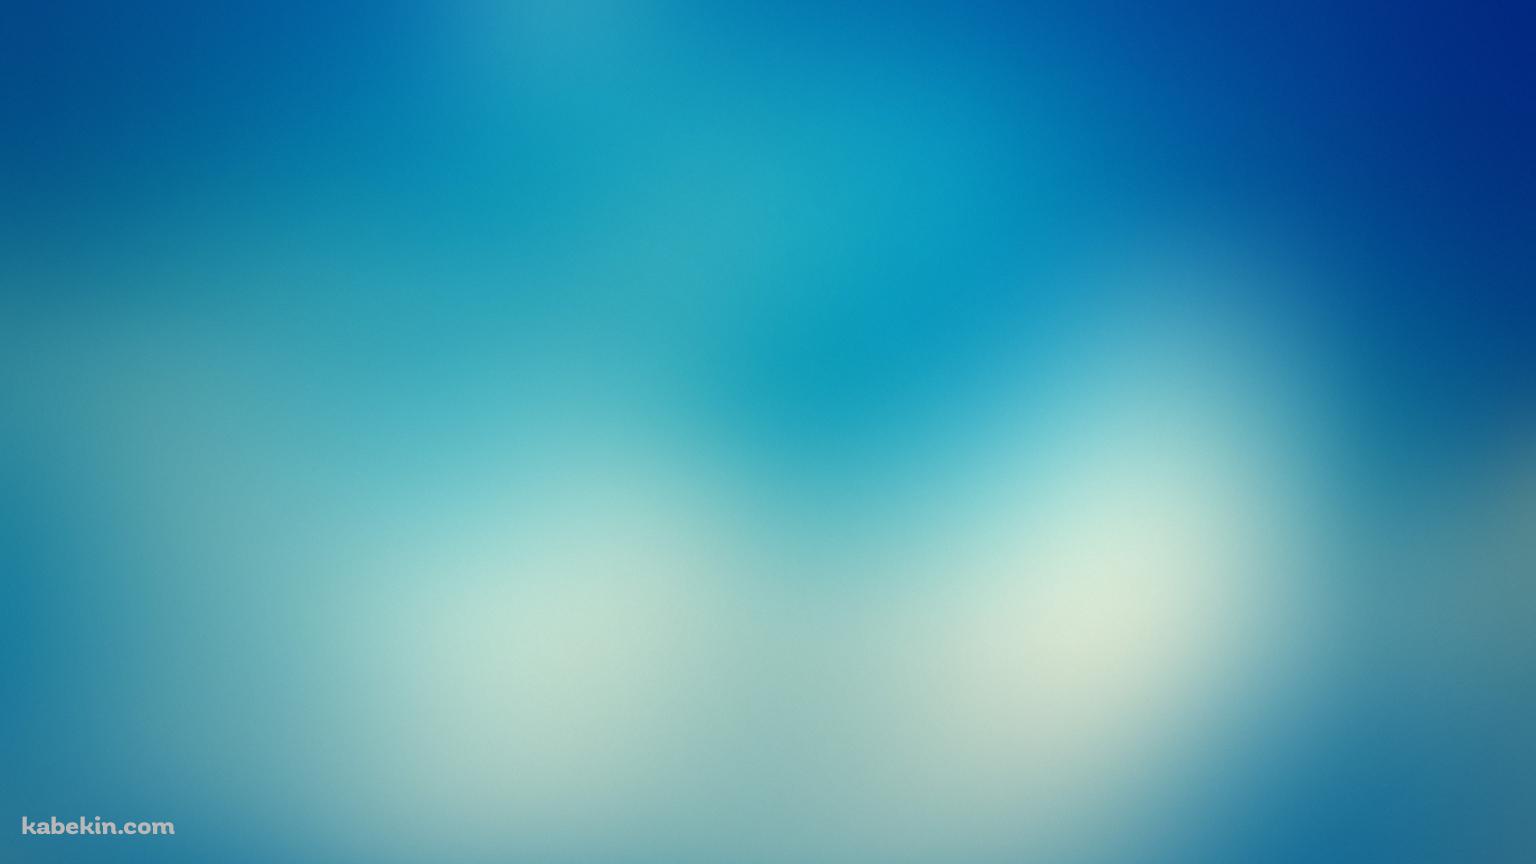 青の濃淡のあるボヤけた壁紙の壁紙(1536px x 864px) 高画質 PC・デスクトップ用